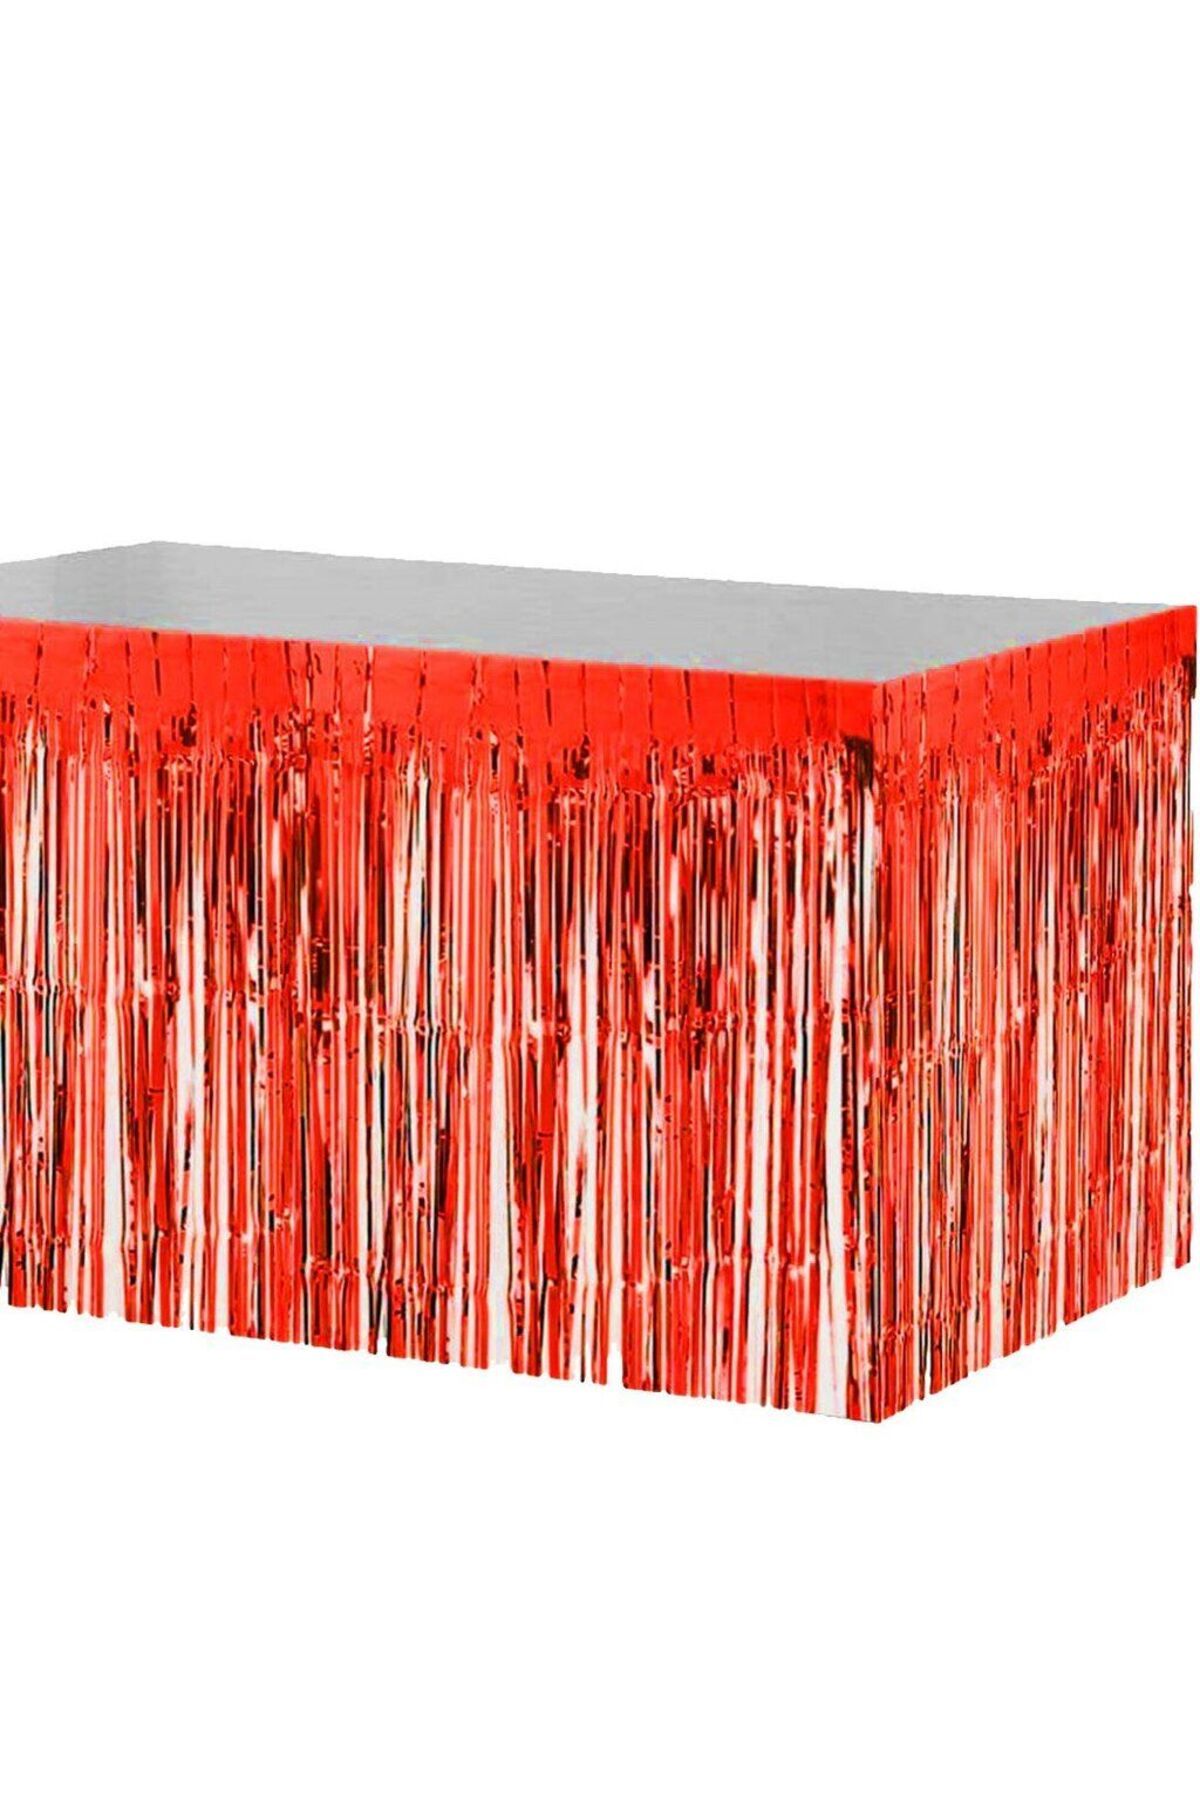 SkyGOO Püsküllü Işıltılı Metalize Kırmızı Renk Masa Eteği 70x300 cm